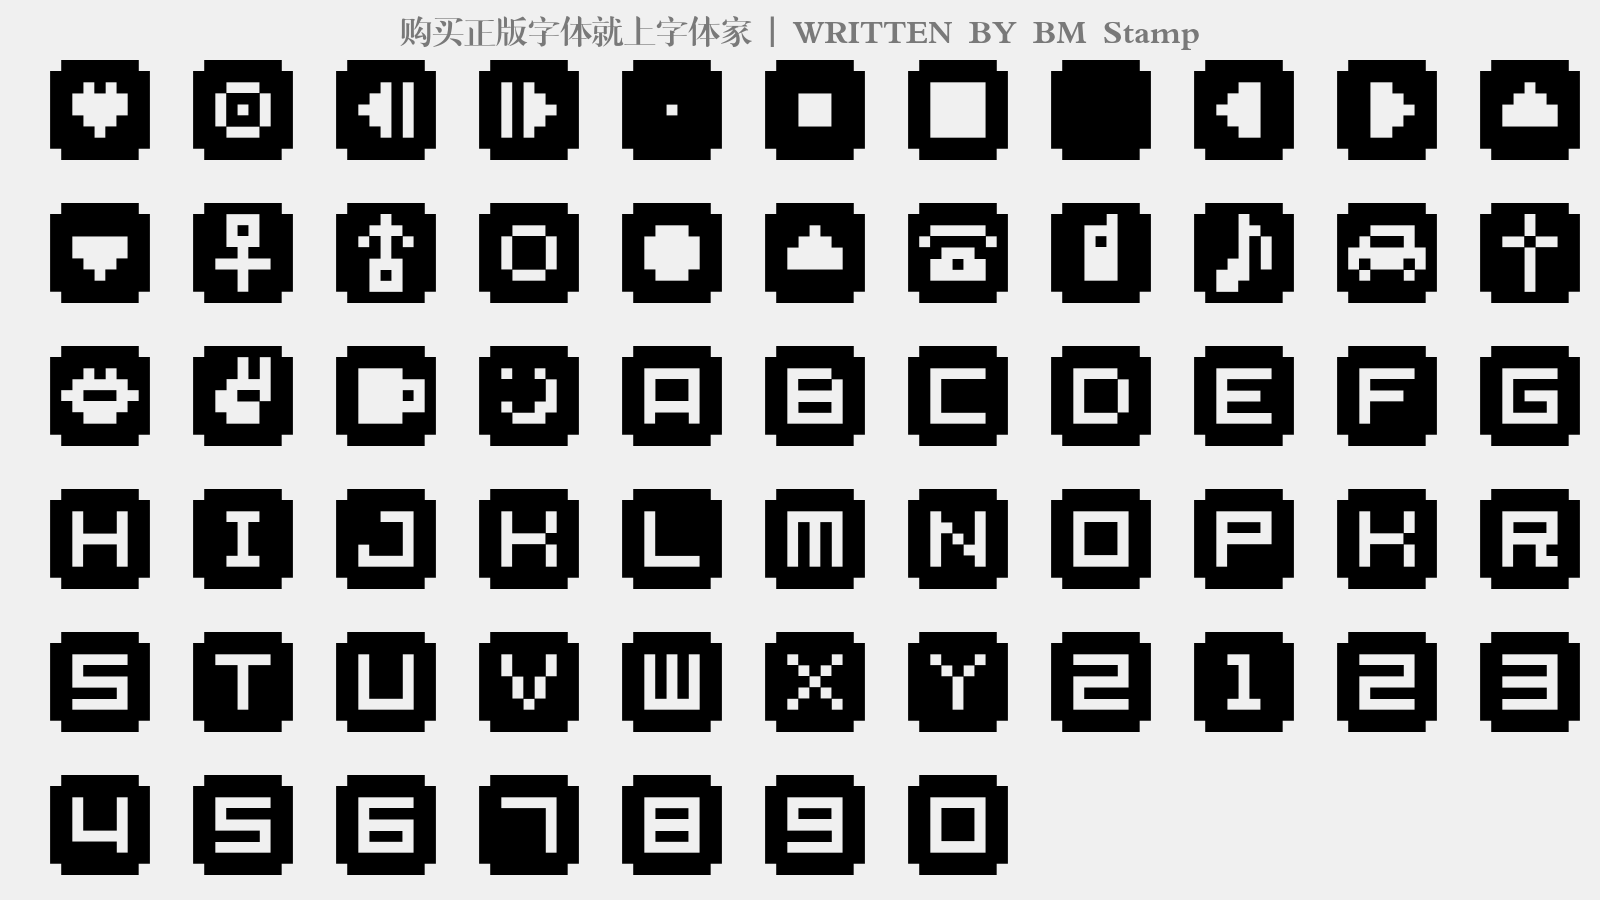 BM Stamp - 大写字母/小写字母/数字